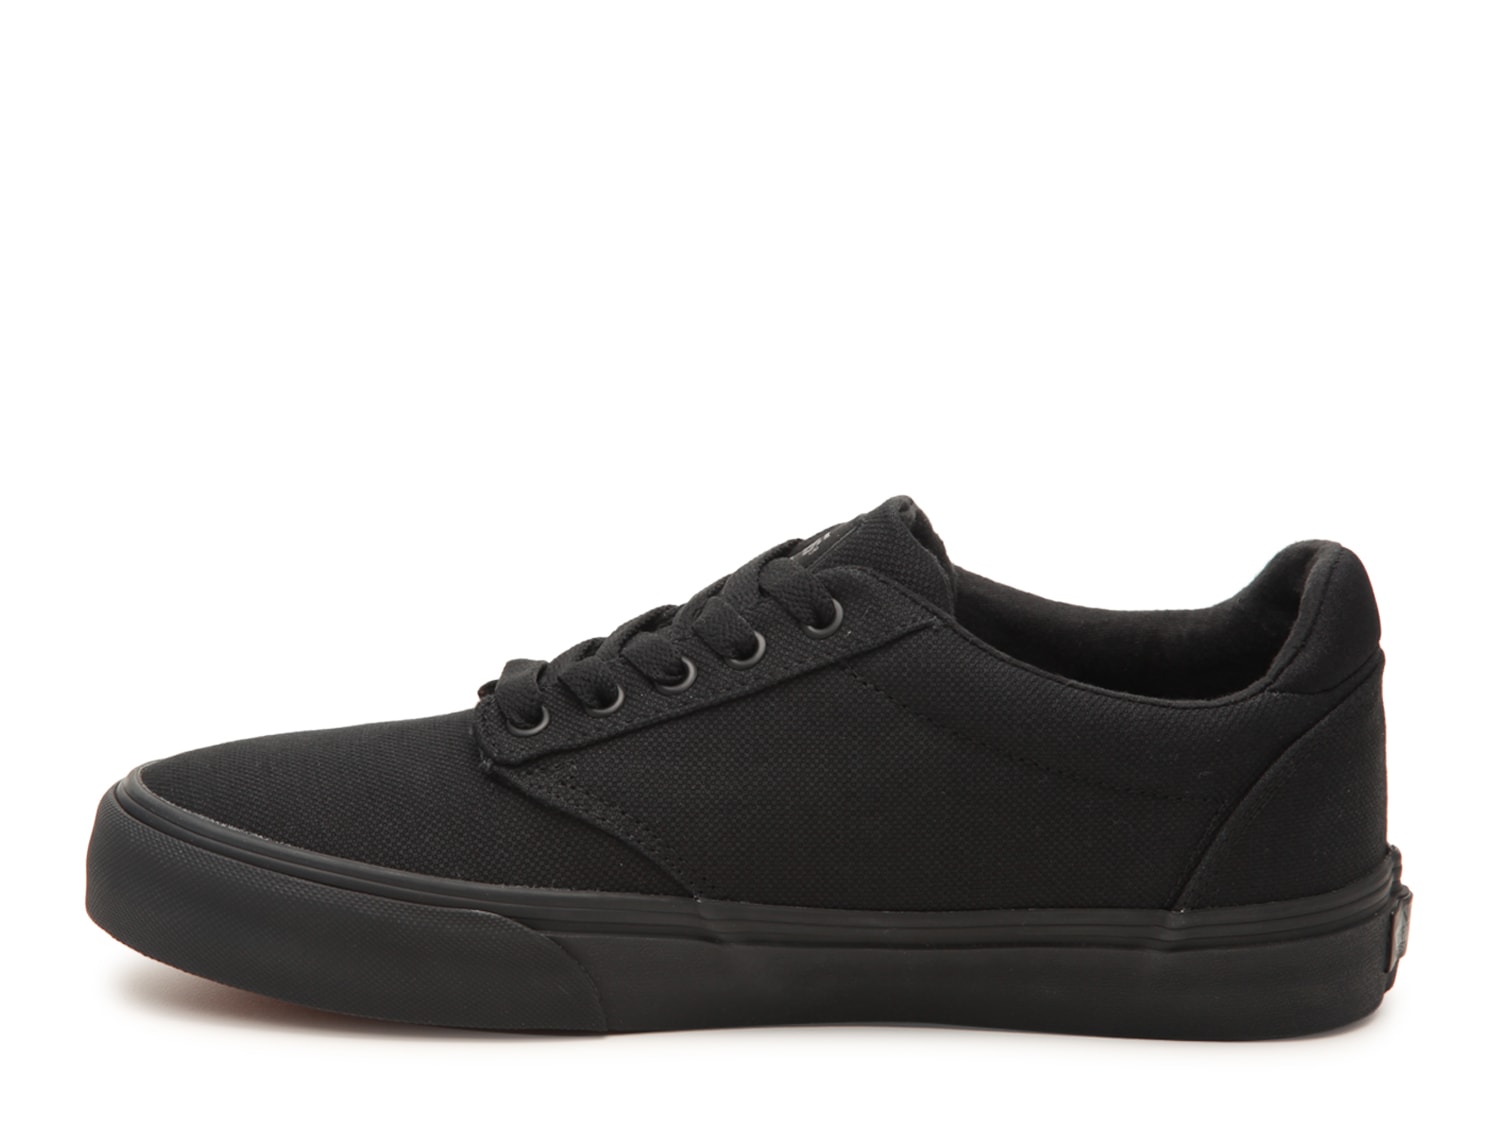 Vans Atwood Deluxe Sneaker - Men's | DSW